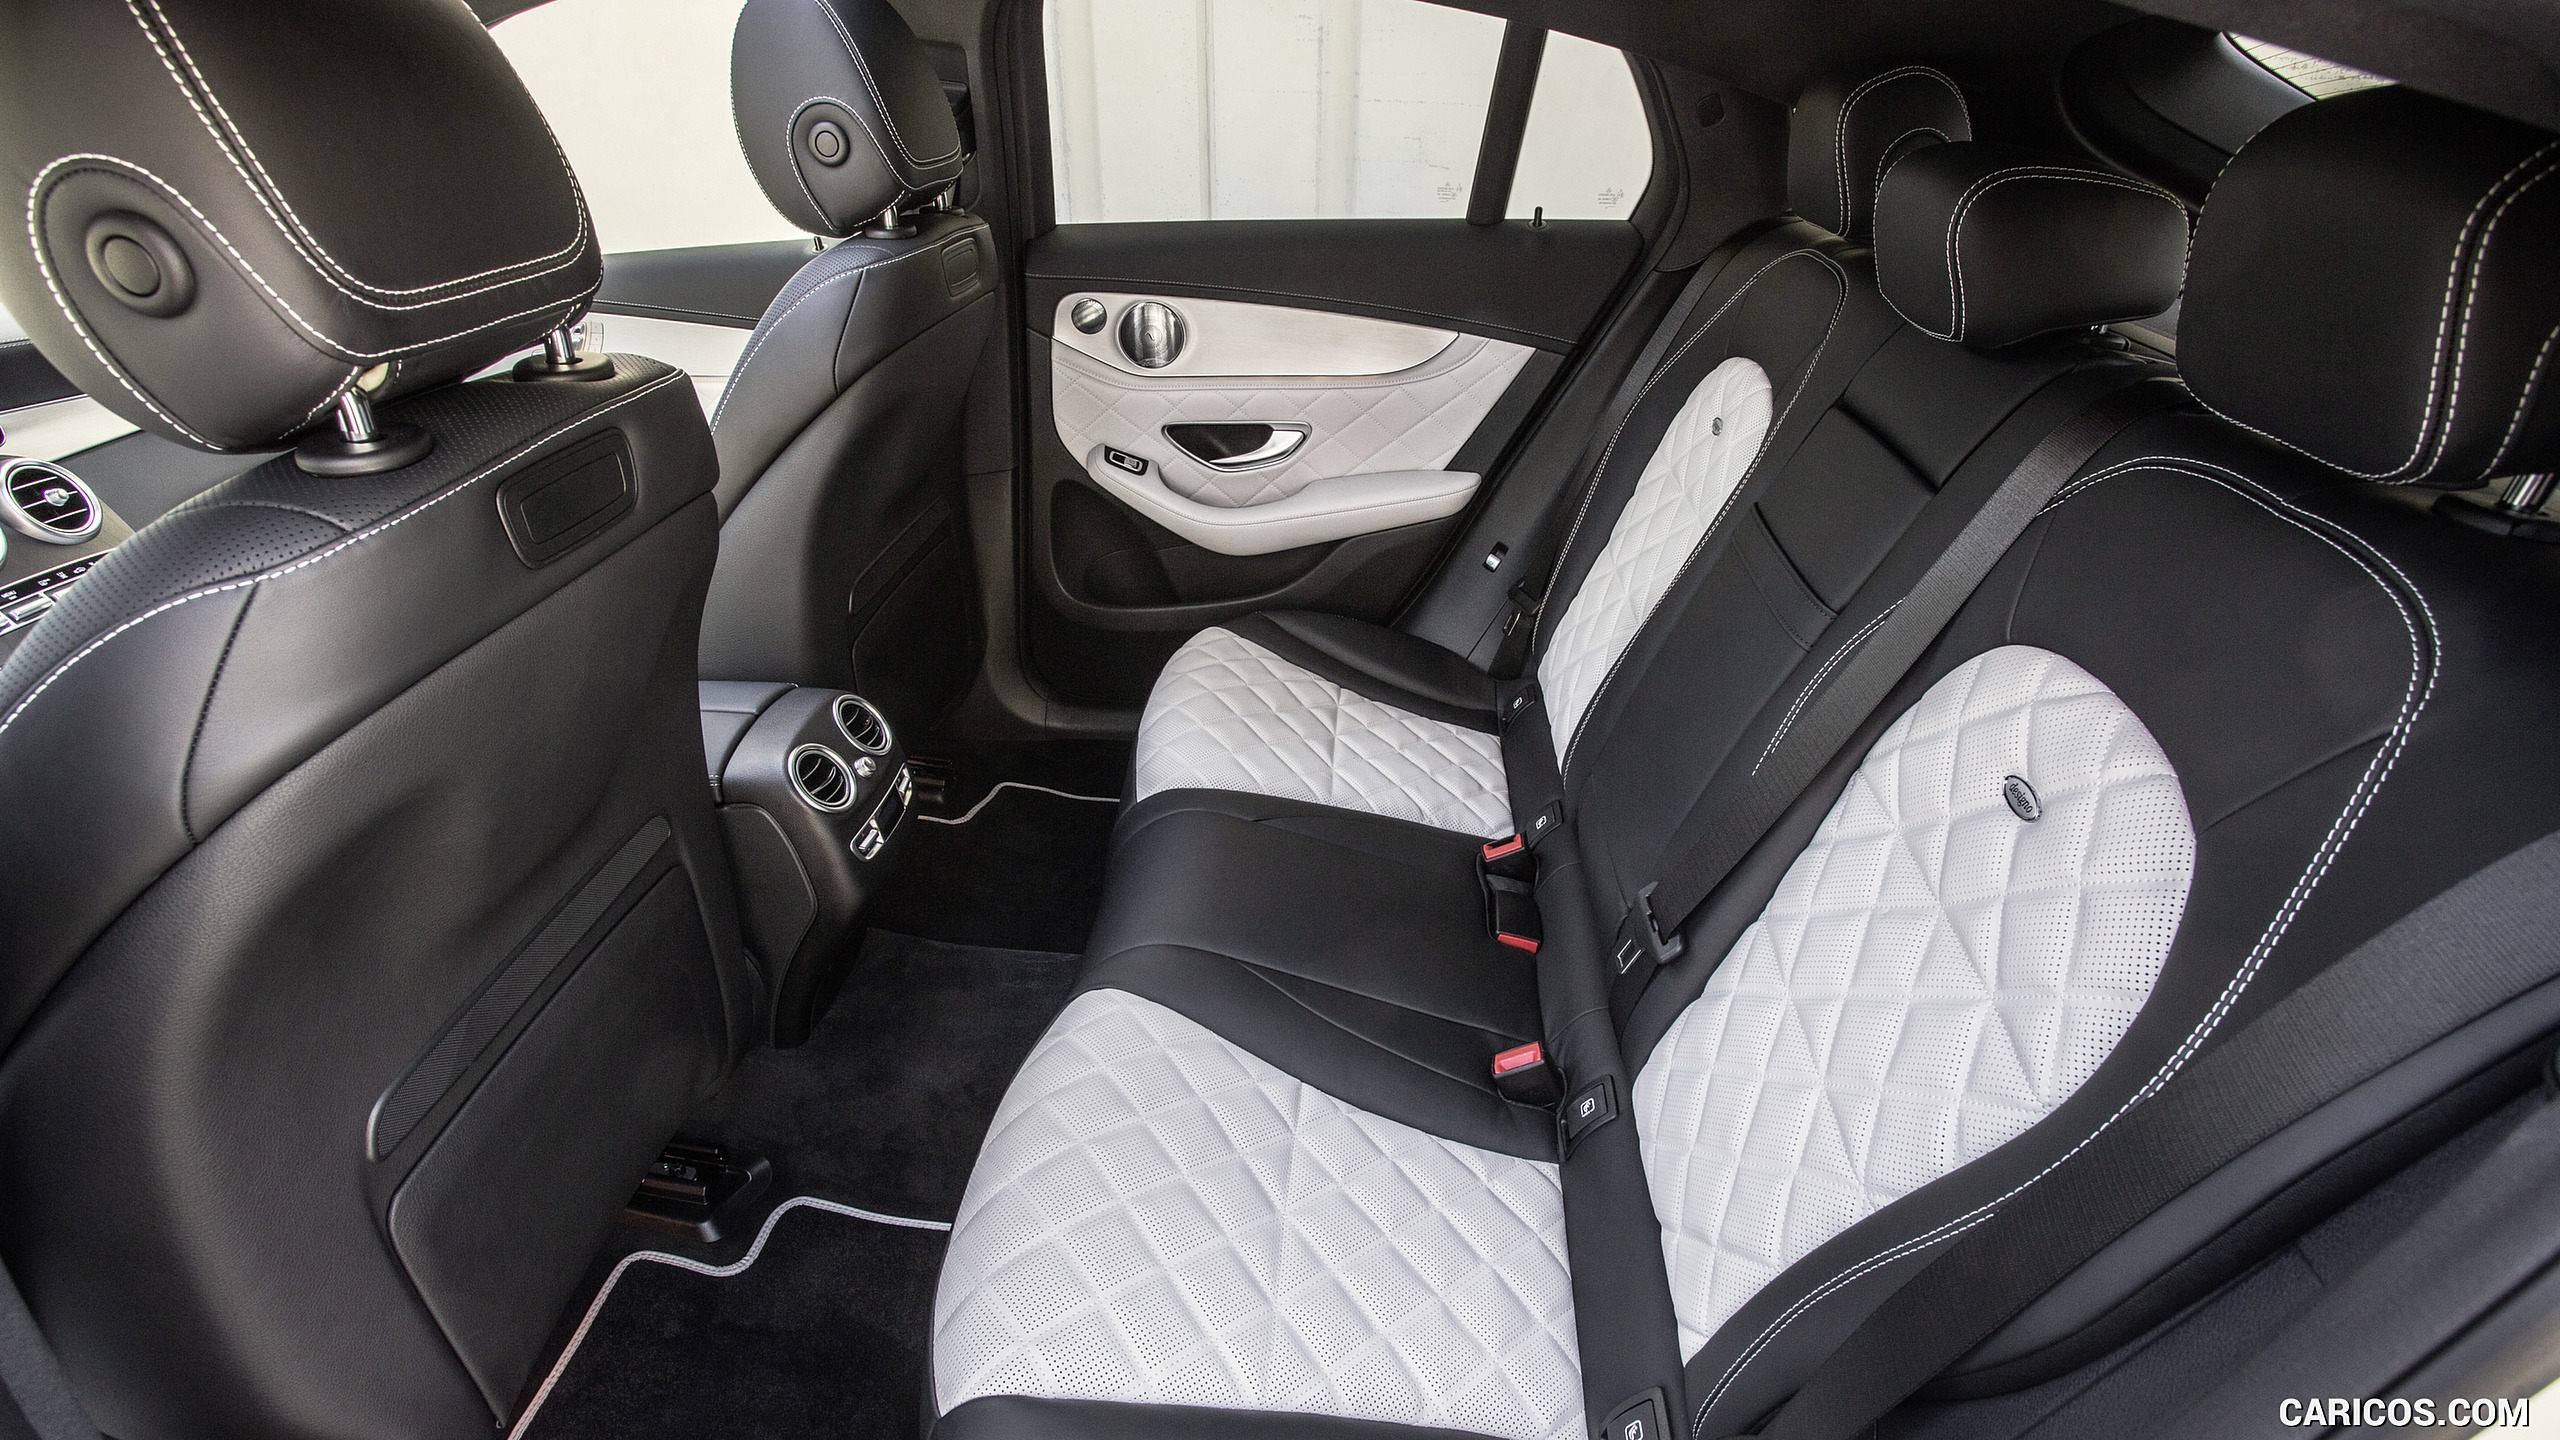 2017 Mercedes-Benz GLC 350 e Coupe Plug-in-Hybrid - Designo Nappa Leather / Platinum White Interior, Rear Seats, #127 of 144